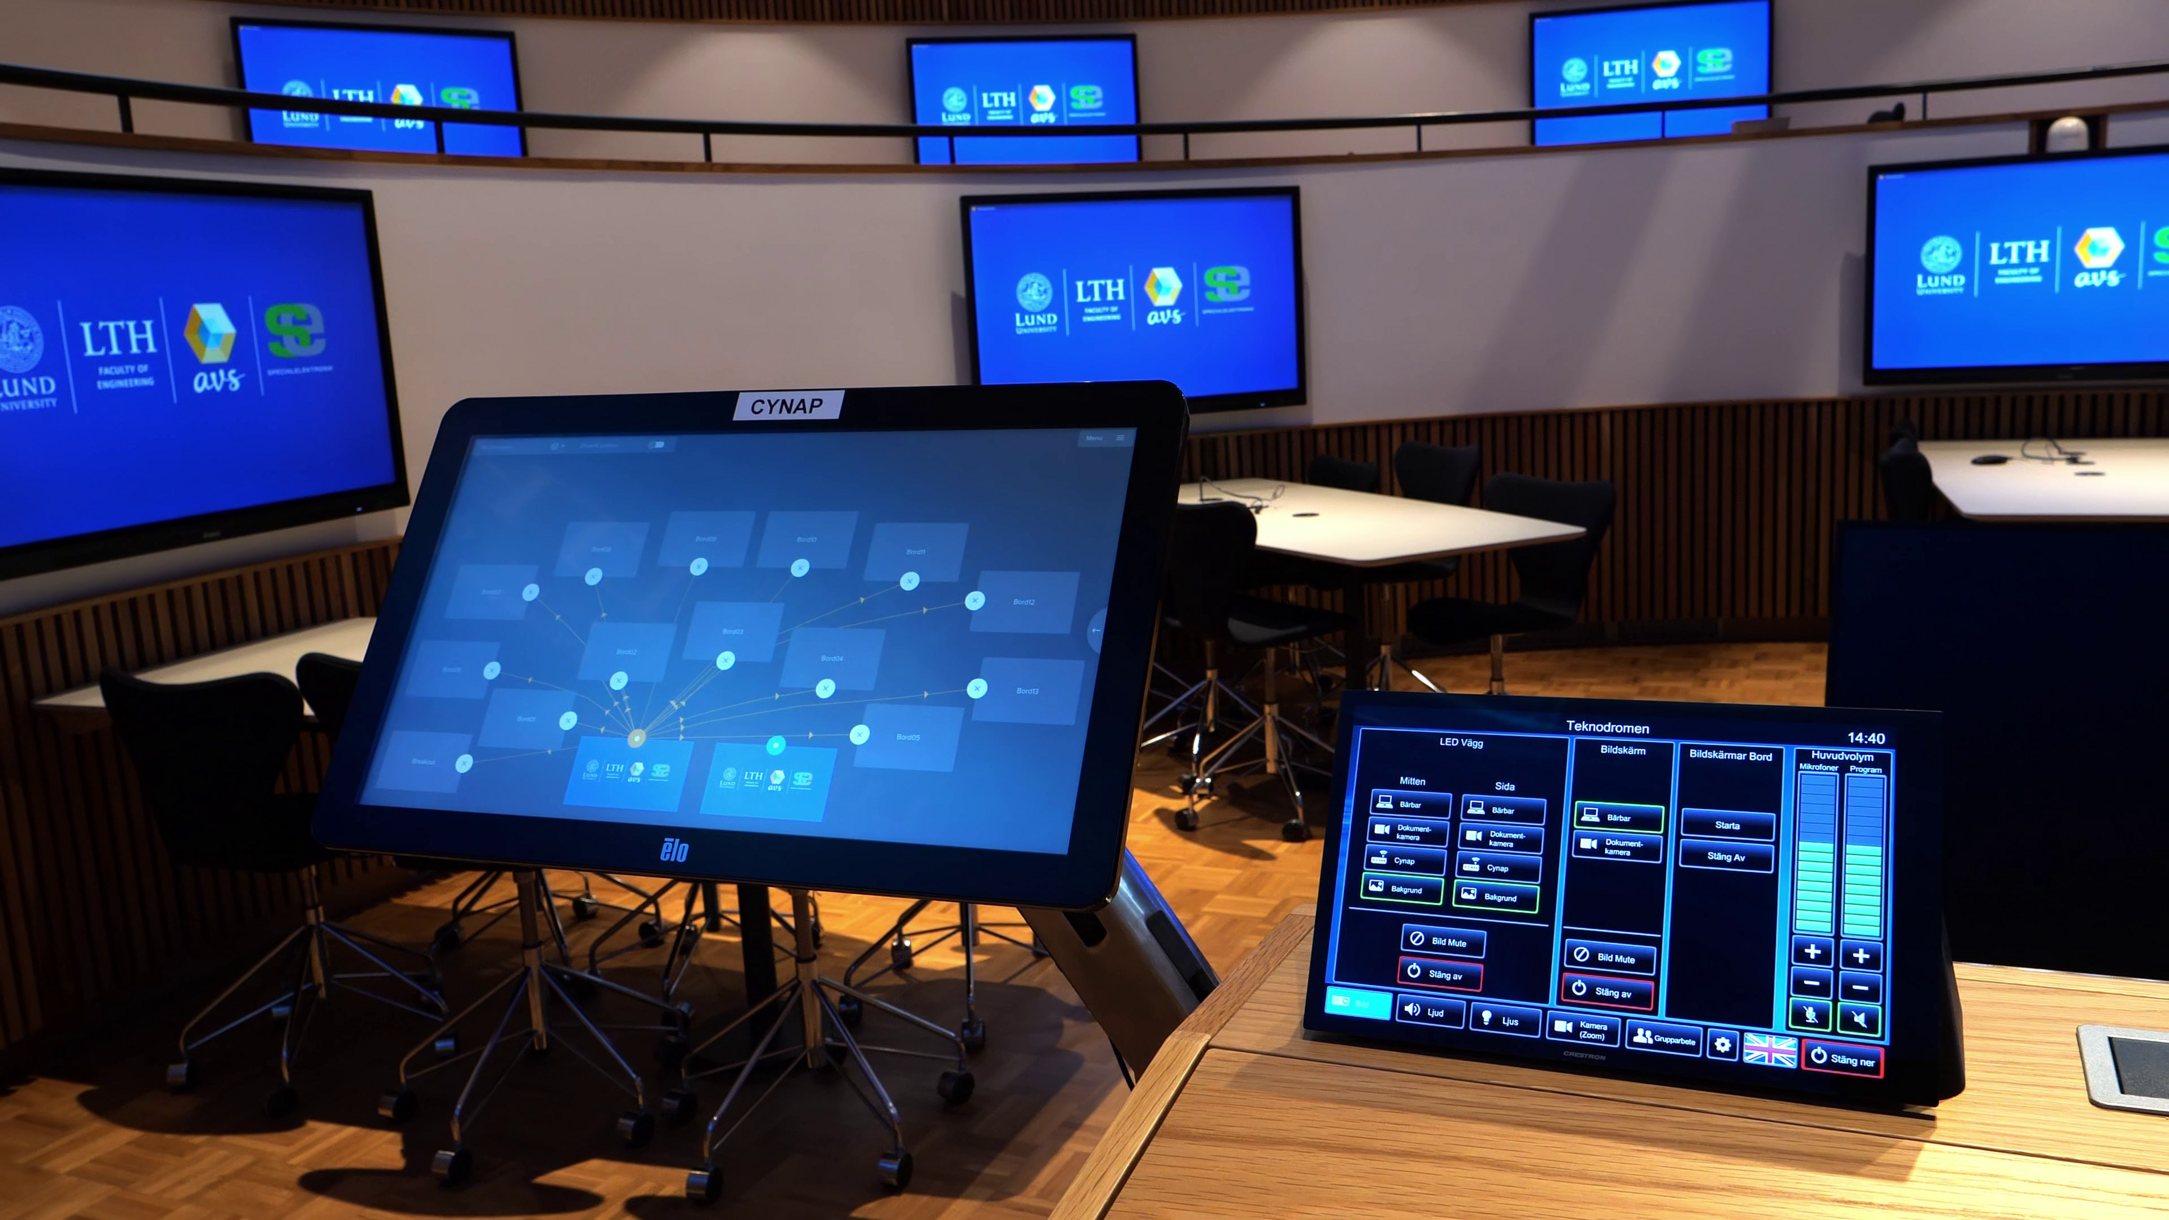 Der Touchscreen "Room View" ermöglicht eine einfache "Drag-and-Drop"-Steuerung aller angezeigten Inhalte.